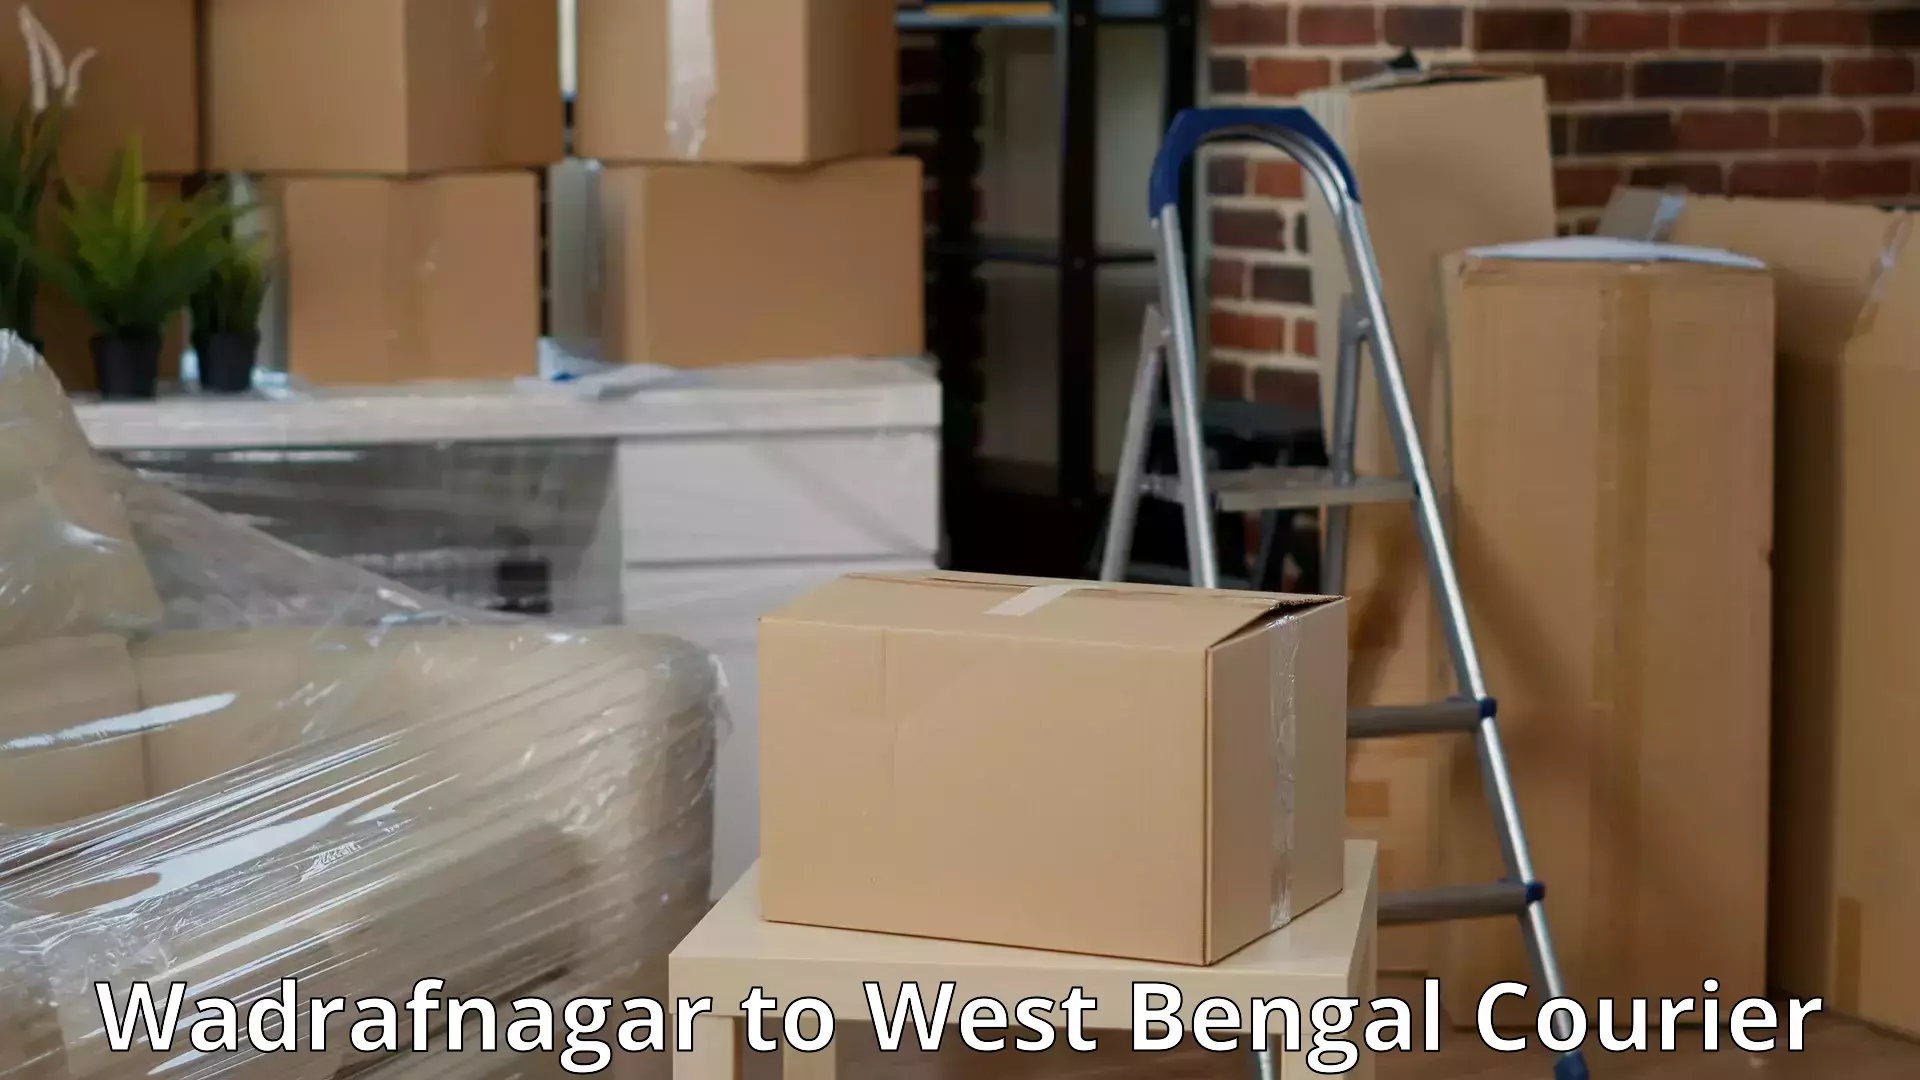 Advanced relocation solutions Wadrafnagar to Kolkata